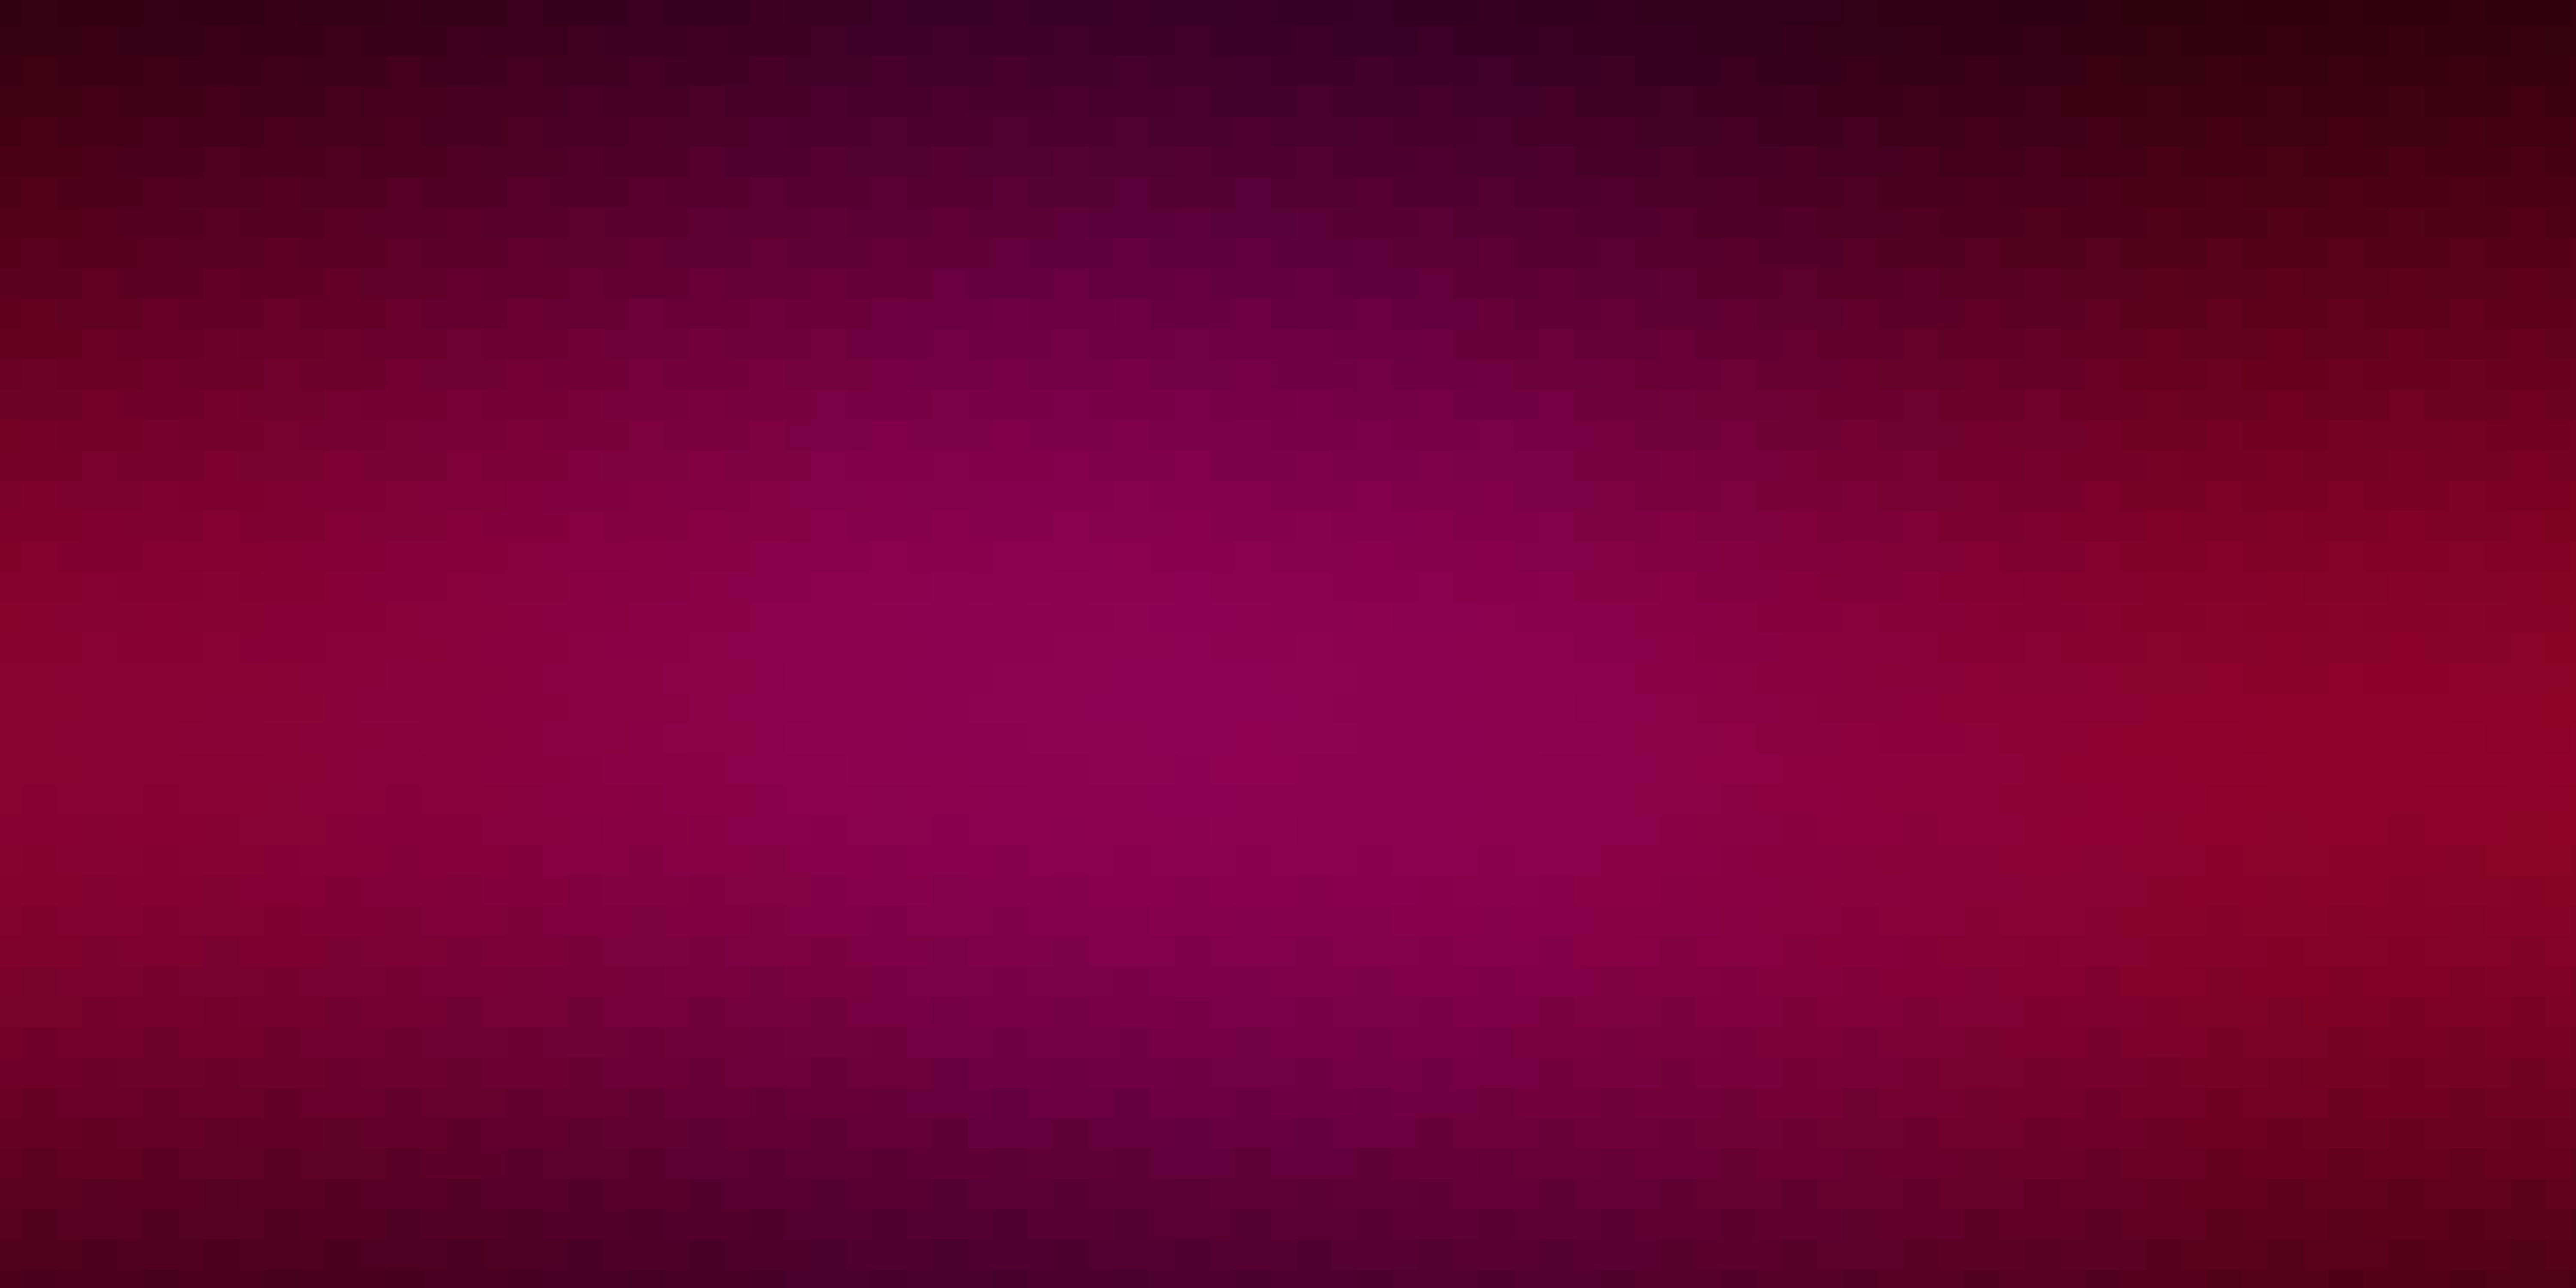 Dark Pink vector background with rectangles. 1840693 Vector Art at Vecteezy